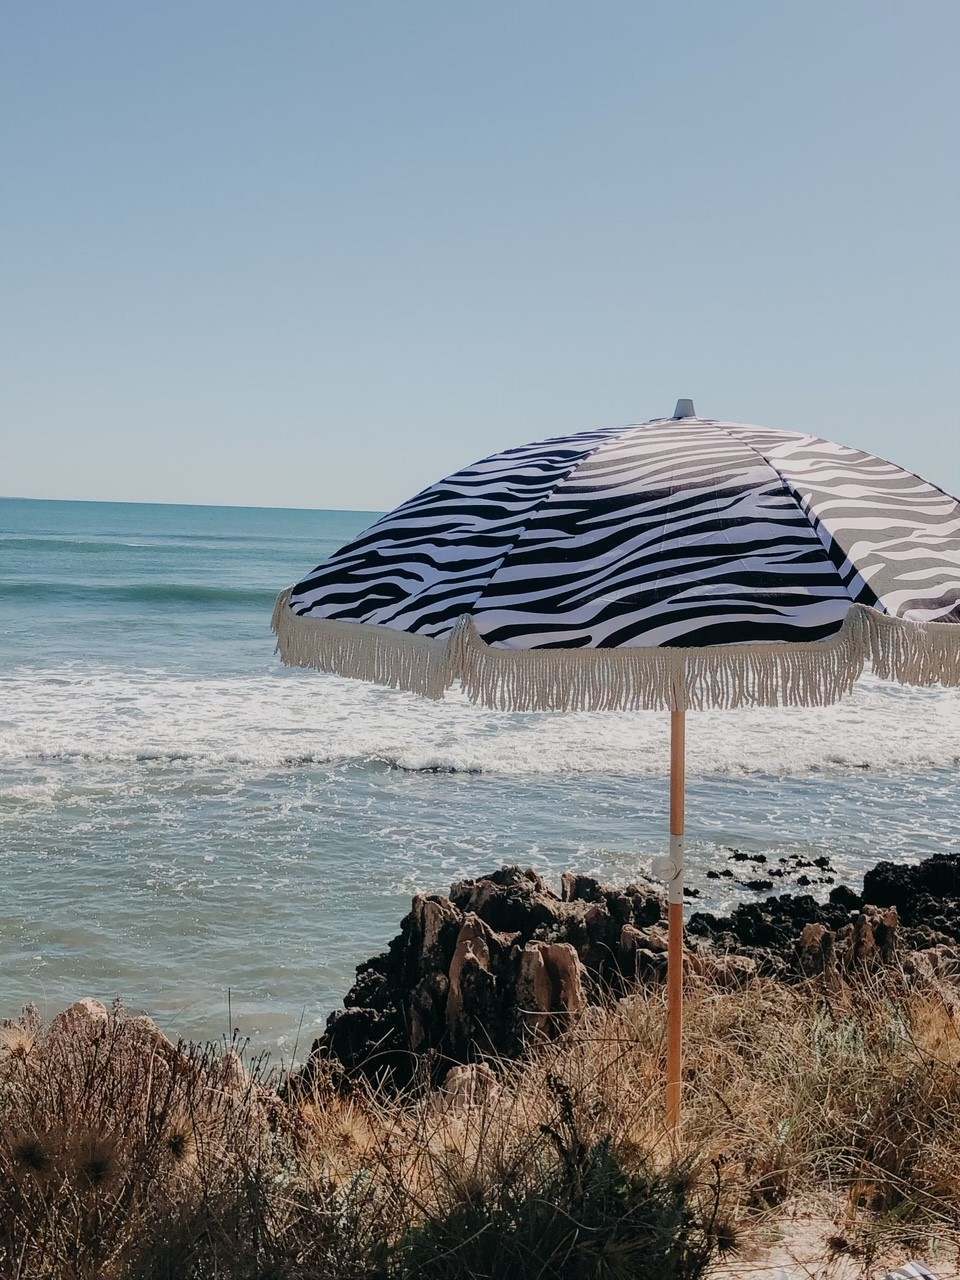 купить Зонт с бахромой 6,5 футов, наклонный пляжный зонт, уличный коммерческий зонтик для патио, садовый зонт,Зонт с бахромой 6,5 футов, наклонный пляжный зонт, уличный коммерческий зонтик для патио, садовый зонт цена,Зонт с бахромой 6,5 футов, наклонный пляжный зонт, уличный коммерческий зонтик для патио, садовый зонт бренды,Зонт с бахромой 6,5 футов, наклонный пляжный зонт, уличный коммерческий зонтик для патио, садовый зонт производитель;Зонт с бахромой 6,5 футов, наклонный пляжный зонт, уличный коммерческий зонтик для патио, садовый зонт Цитаты;Зонт с бахромой 6,5 футов, наклонный пляжный зонт, уличный коммерческий зонтик для патио, садовый зонт компания